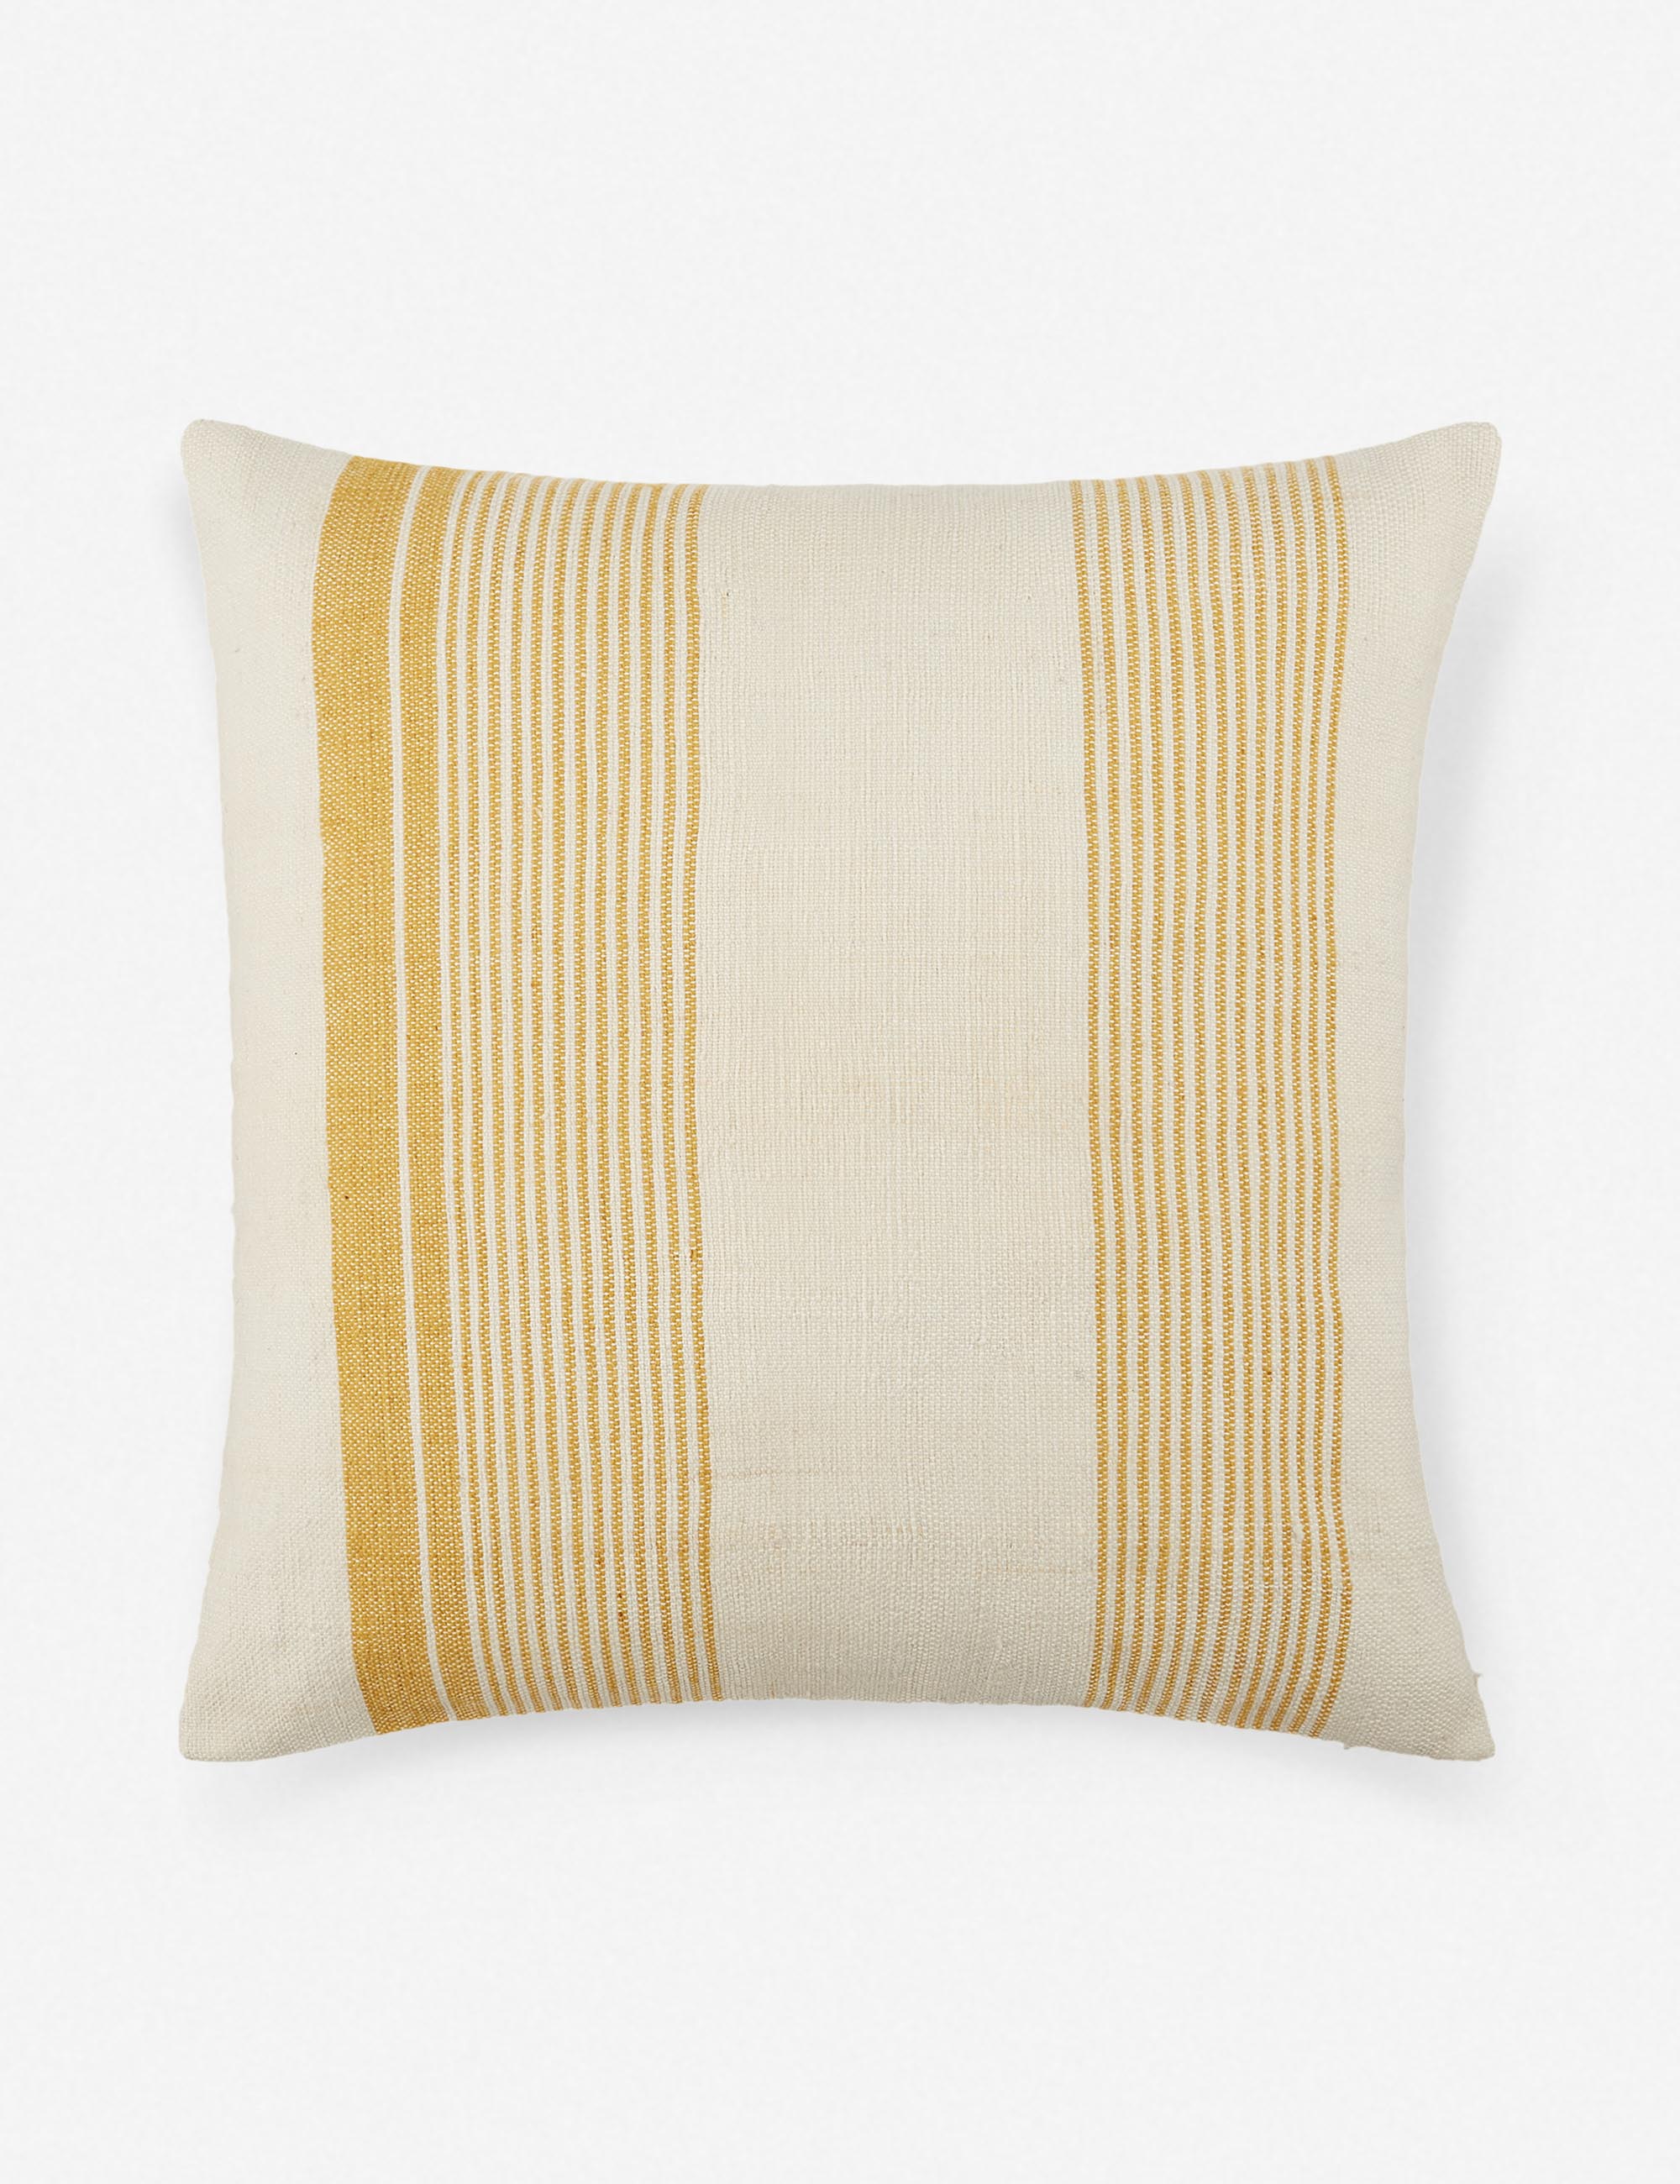 Kristian Indoor / Outdoor Pillow, Gold 20" x 20"